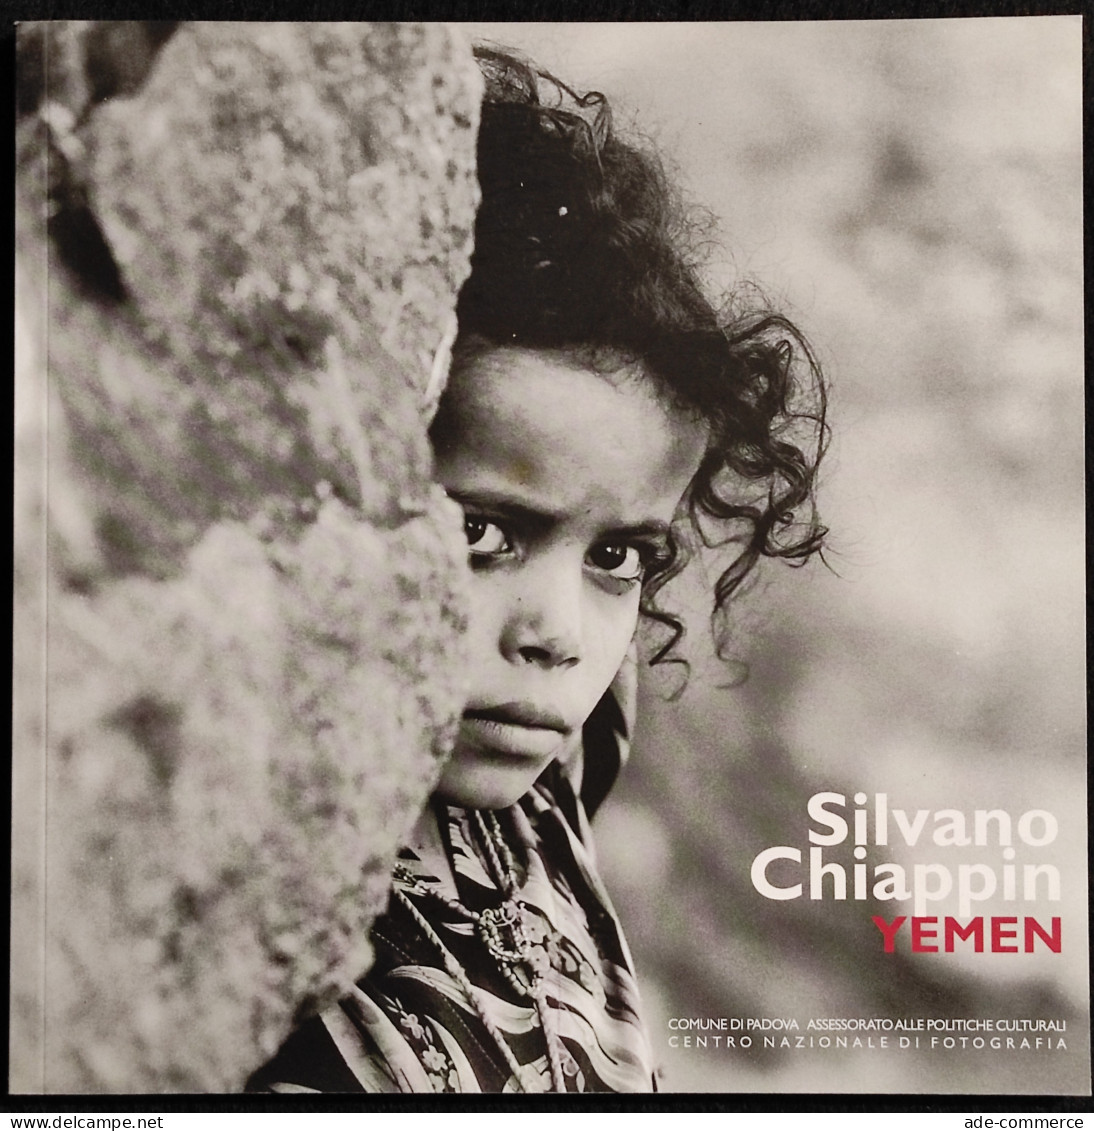 Silvano Chiappin - Yemen - E. Gusella - 2006 - Fotografia - Photo